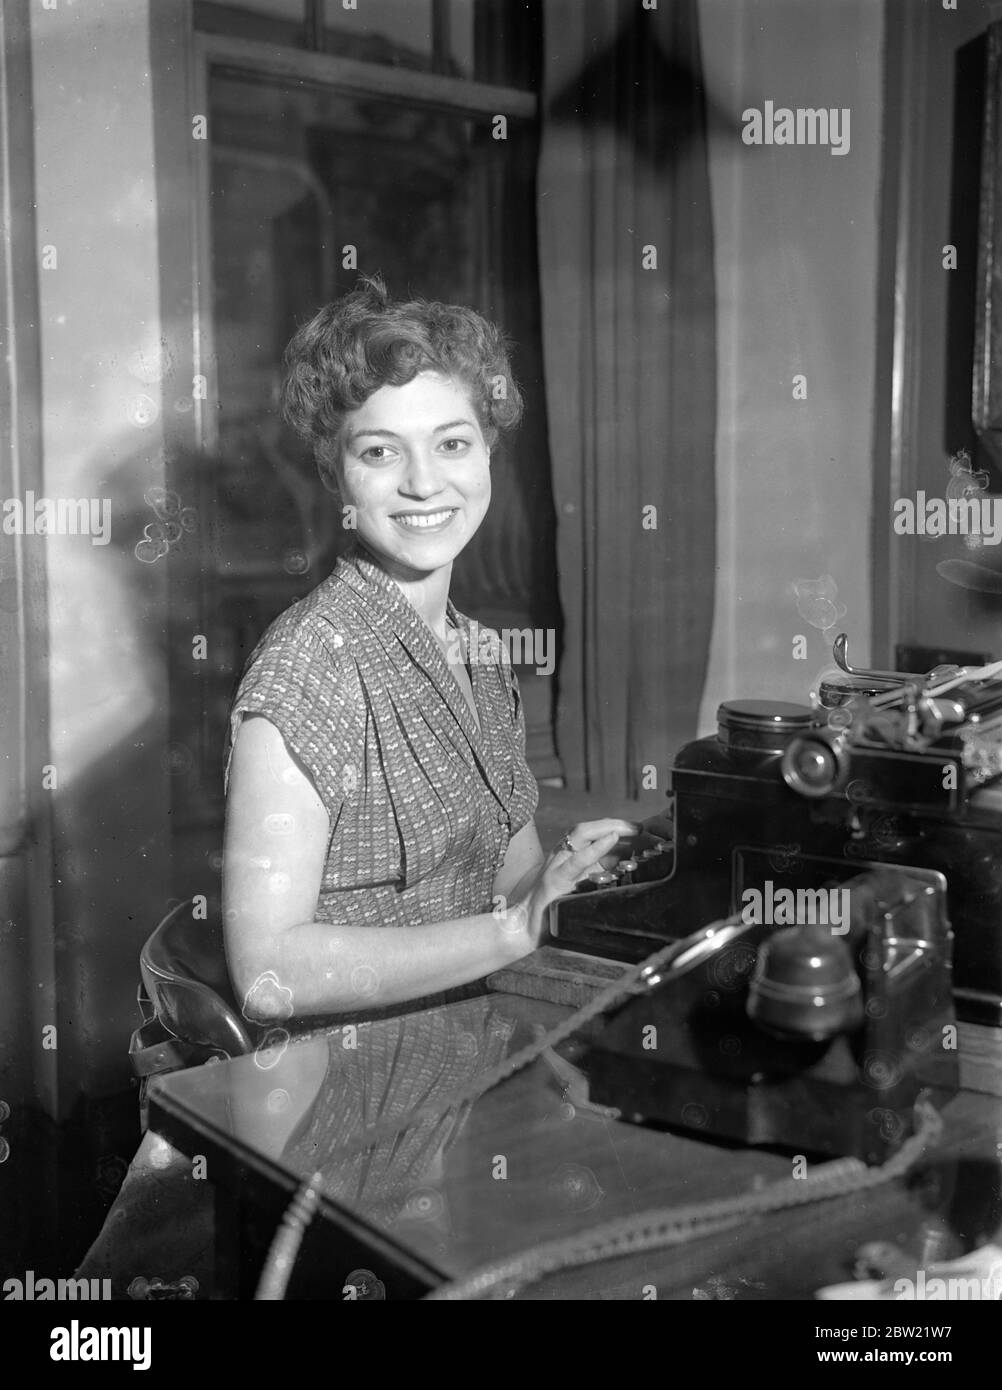 Miss Joy Olyphant, 21 Jahre, von Wymering Mansions, Maida Vale, die ihren Wochenjob von Â£7-10 aufgegeben hat, um nach Hollywood zu segeln, wo sie jährlich 1500 Â£Sekretariatsjob beim Künstlervertreter Bo Roos übernimmt. Joy, eine ehemalige Paddington Beauty Queen, erschien in einem Film Lady Godiva Rides Again (1951) 21. März 1952 Stockfoto